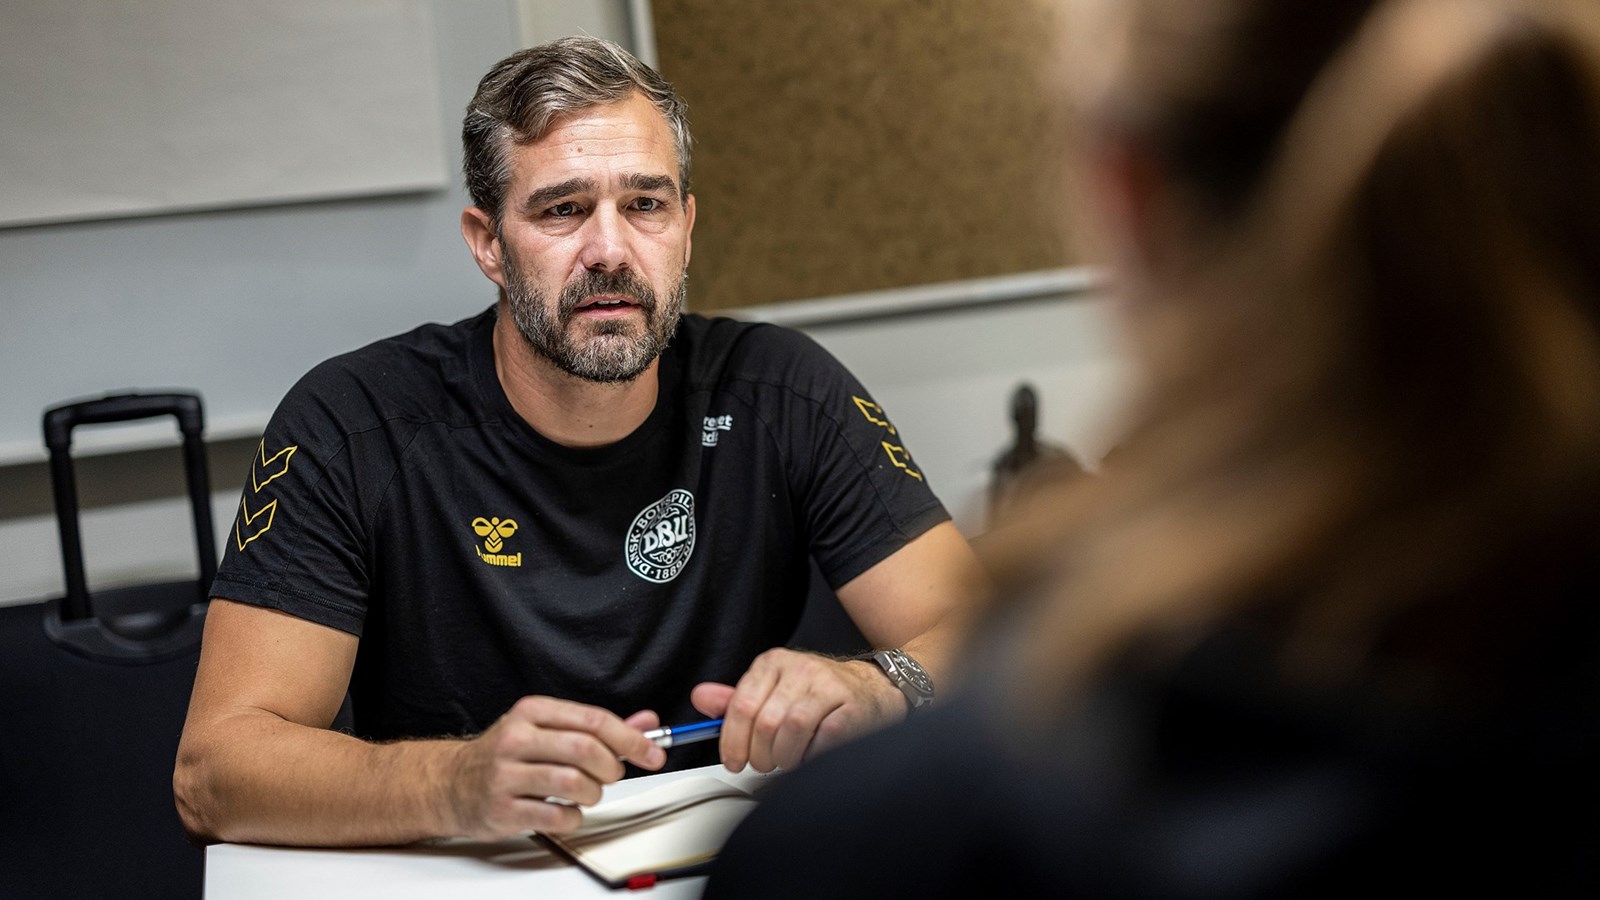 Mental sundhed får egen uddannelse og udgivelse i dansk fodbold